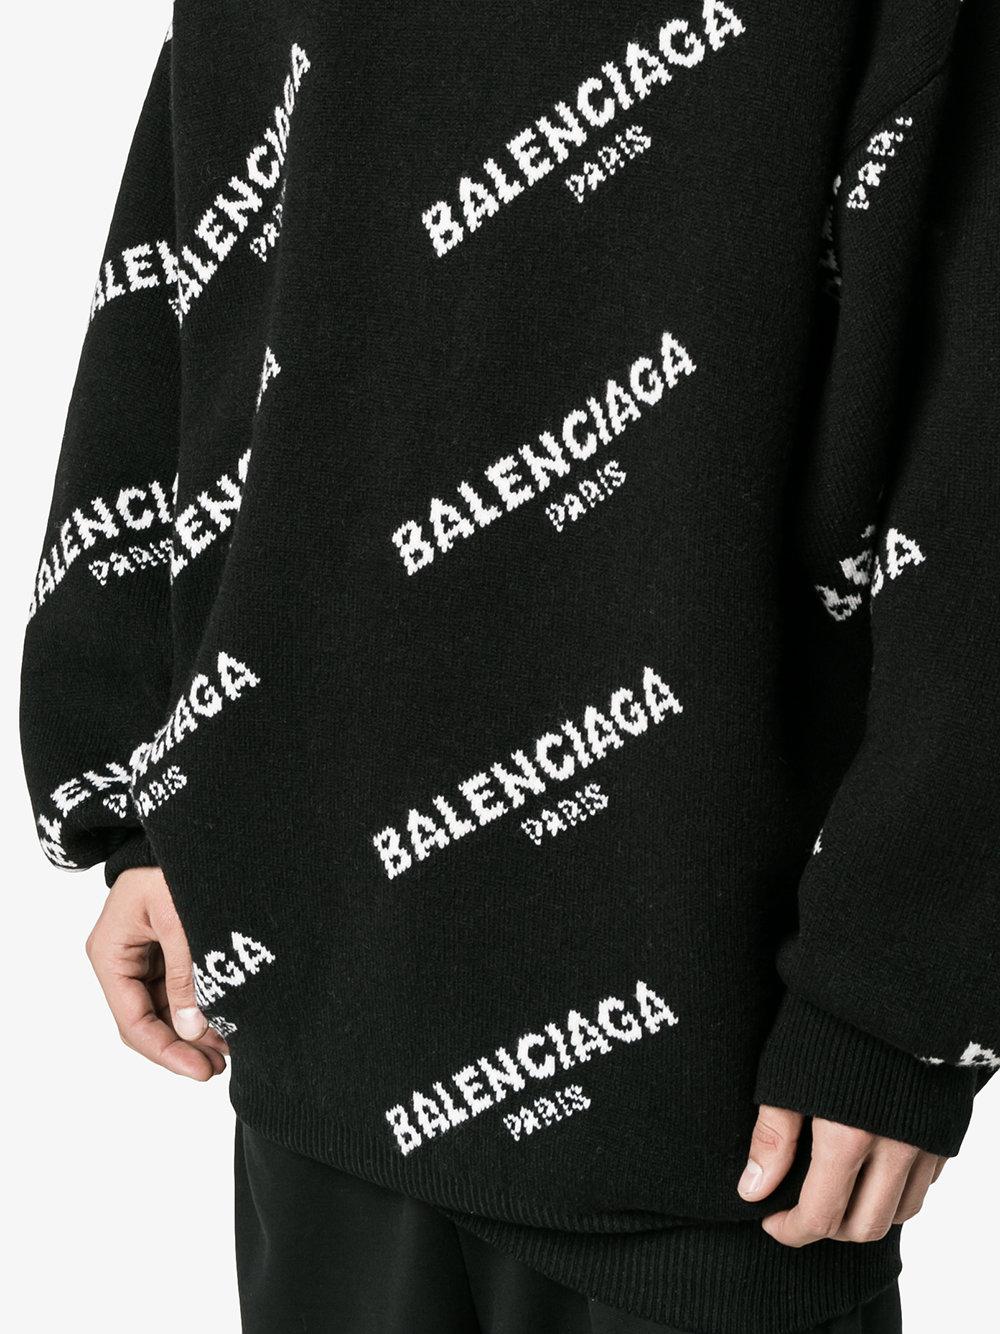 Balenciaga Logo Sweater Replica | The 